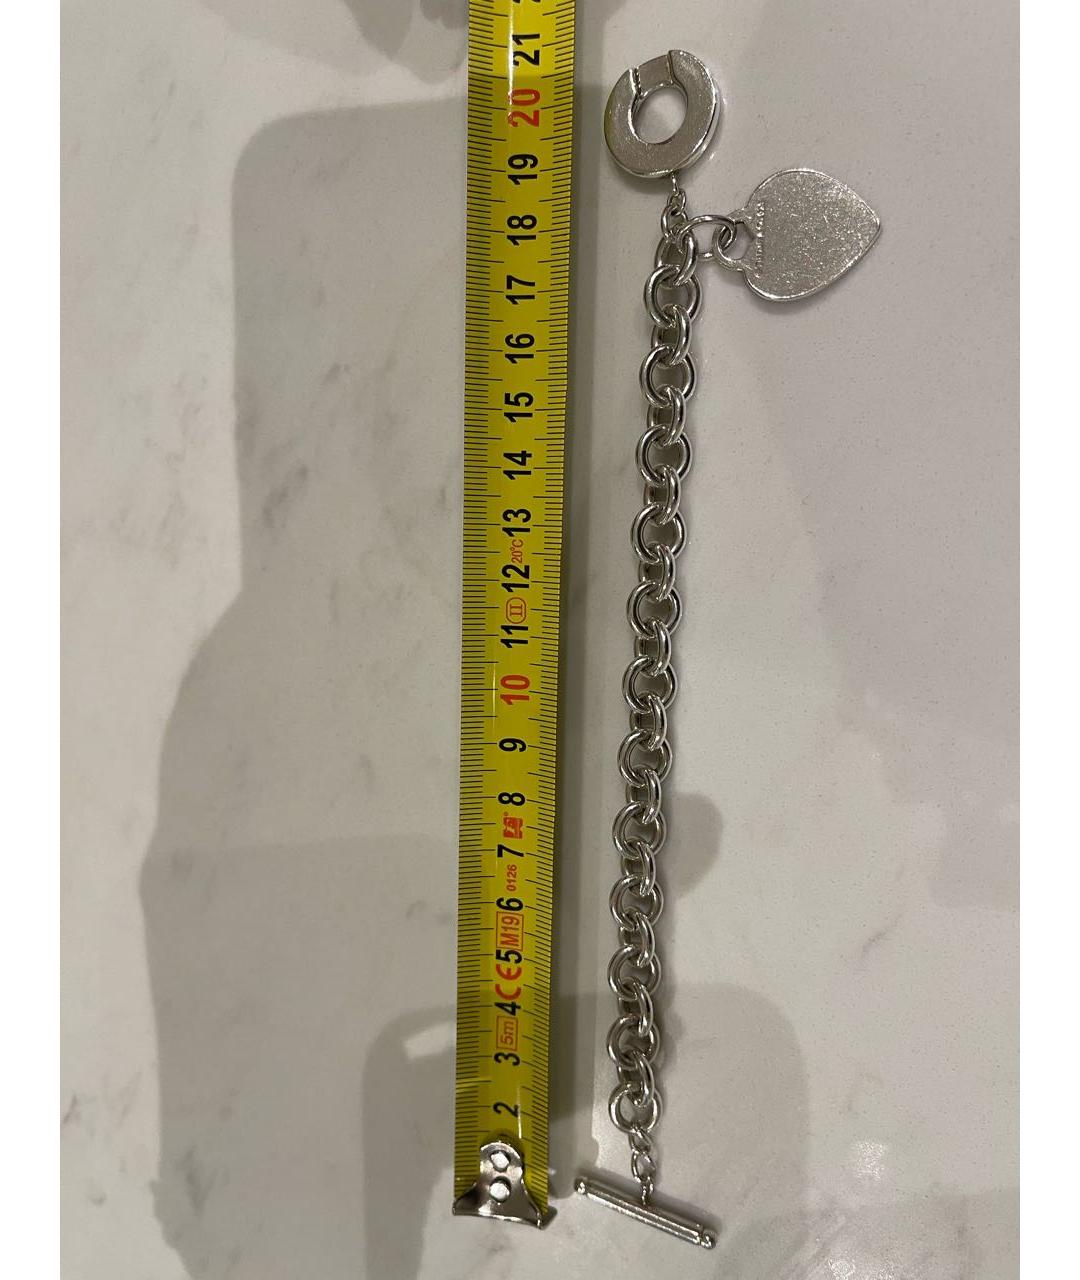 TIFFANY&CO Серебрянный серебряный браслет, фото 8